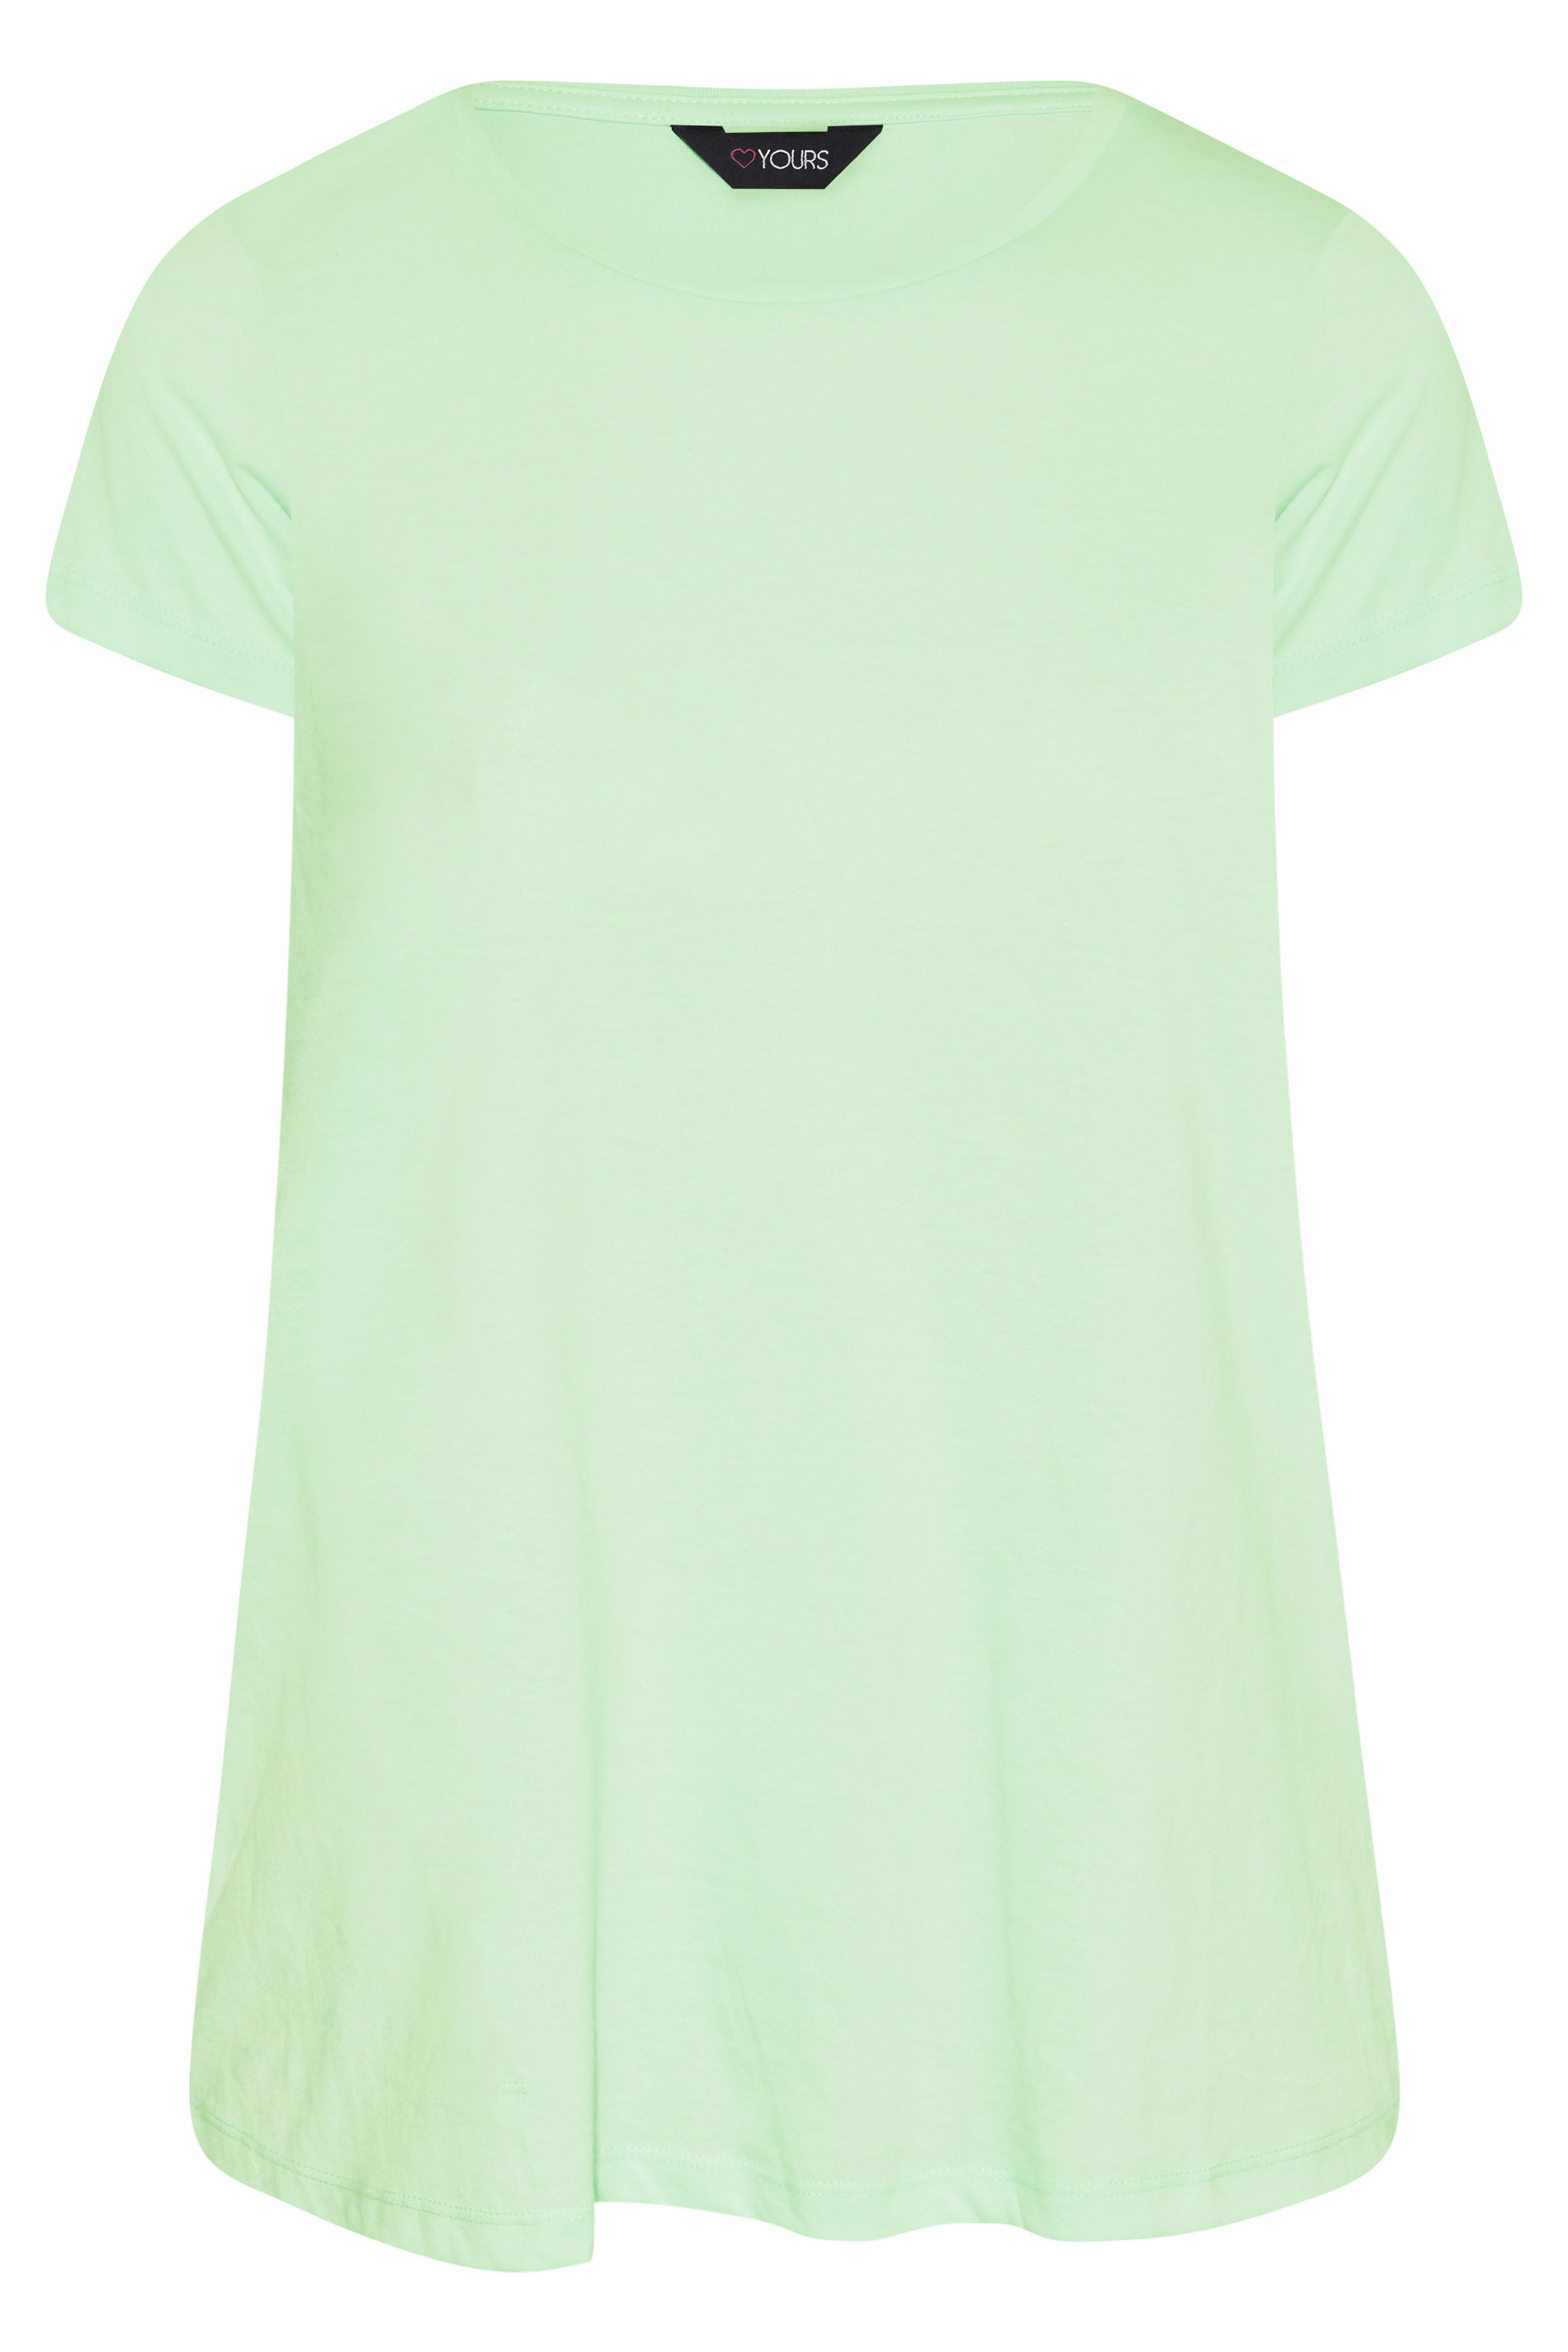 Grande taille  Tops Grande taille  T-Shirts Basiques & Débardeurs | T-Shirt Vert Citron en Jersey - GI63553